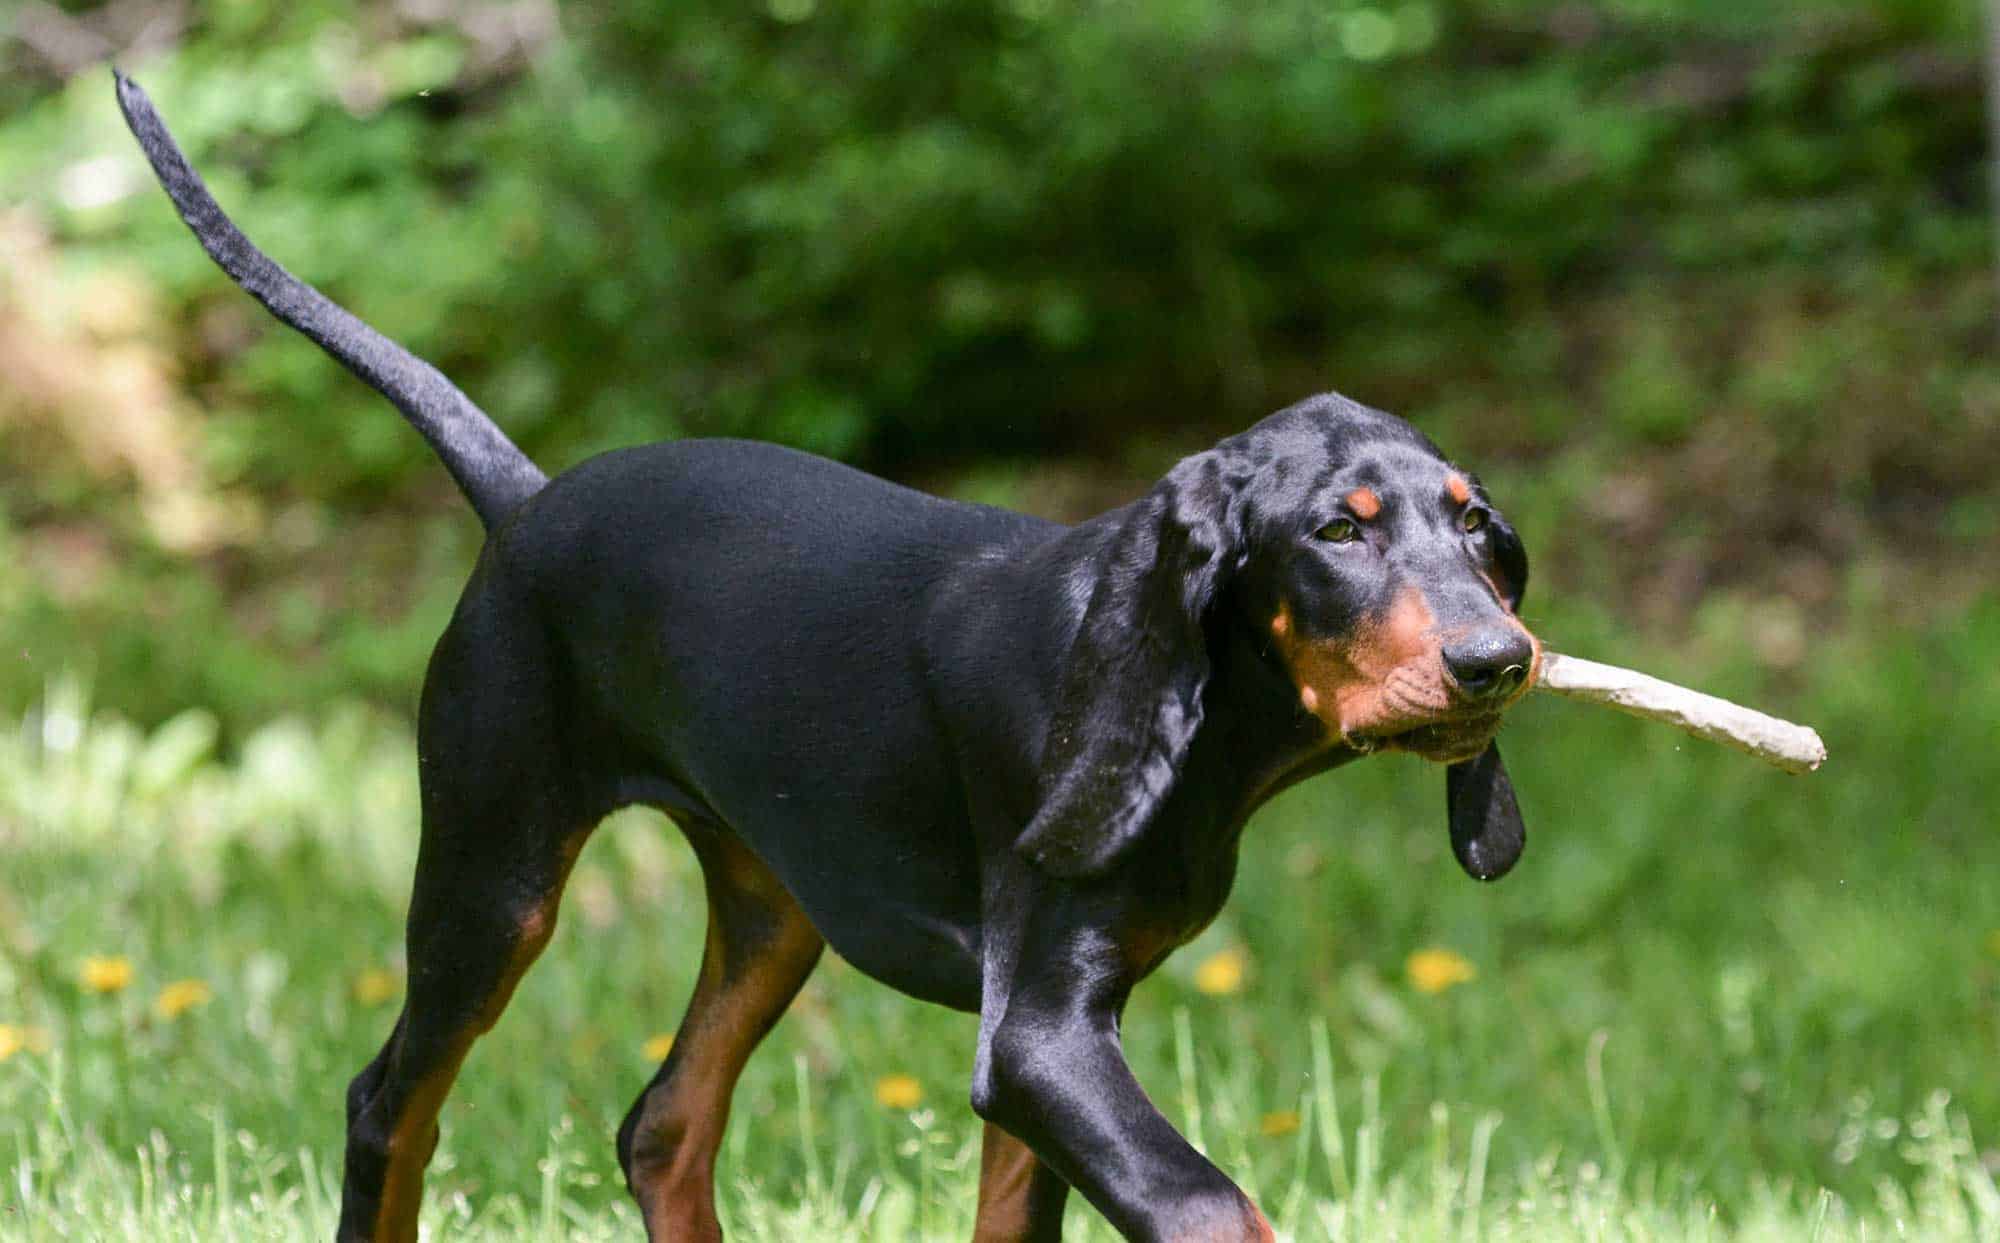 A hound carrying a stick